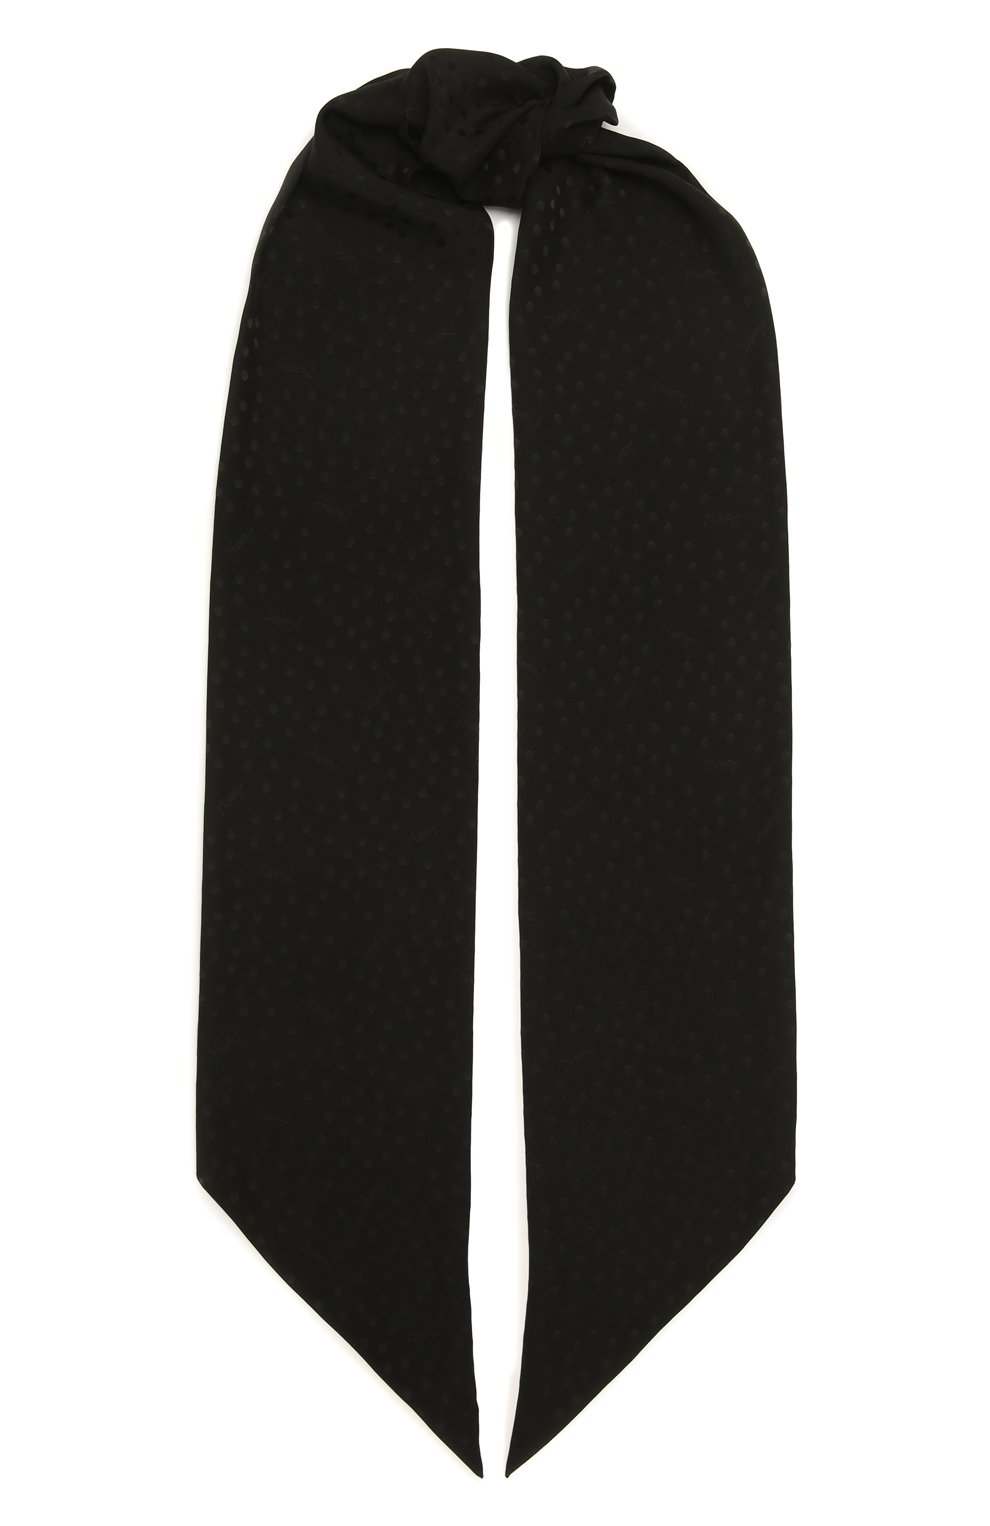 Шарфы Saint Laurent, Шелковый шарф Saint Laurent, Италия, Чёрный, Шелк: 100%;, 11979818  - купить